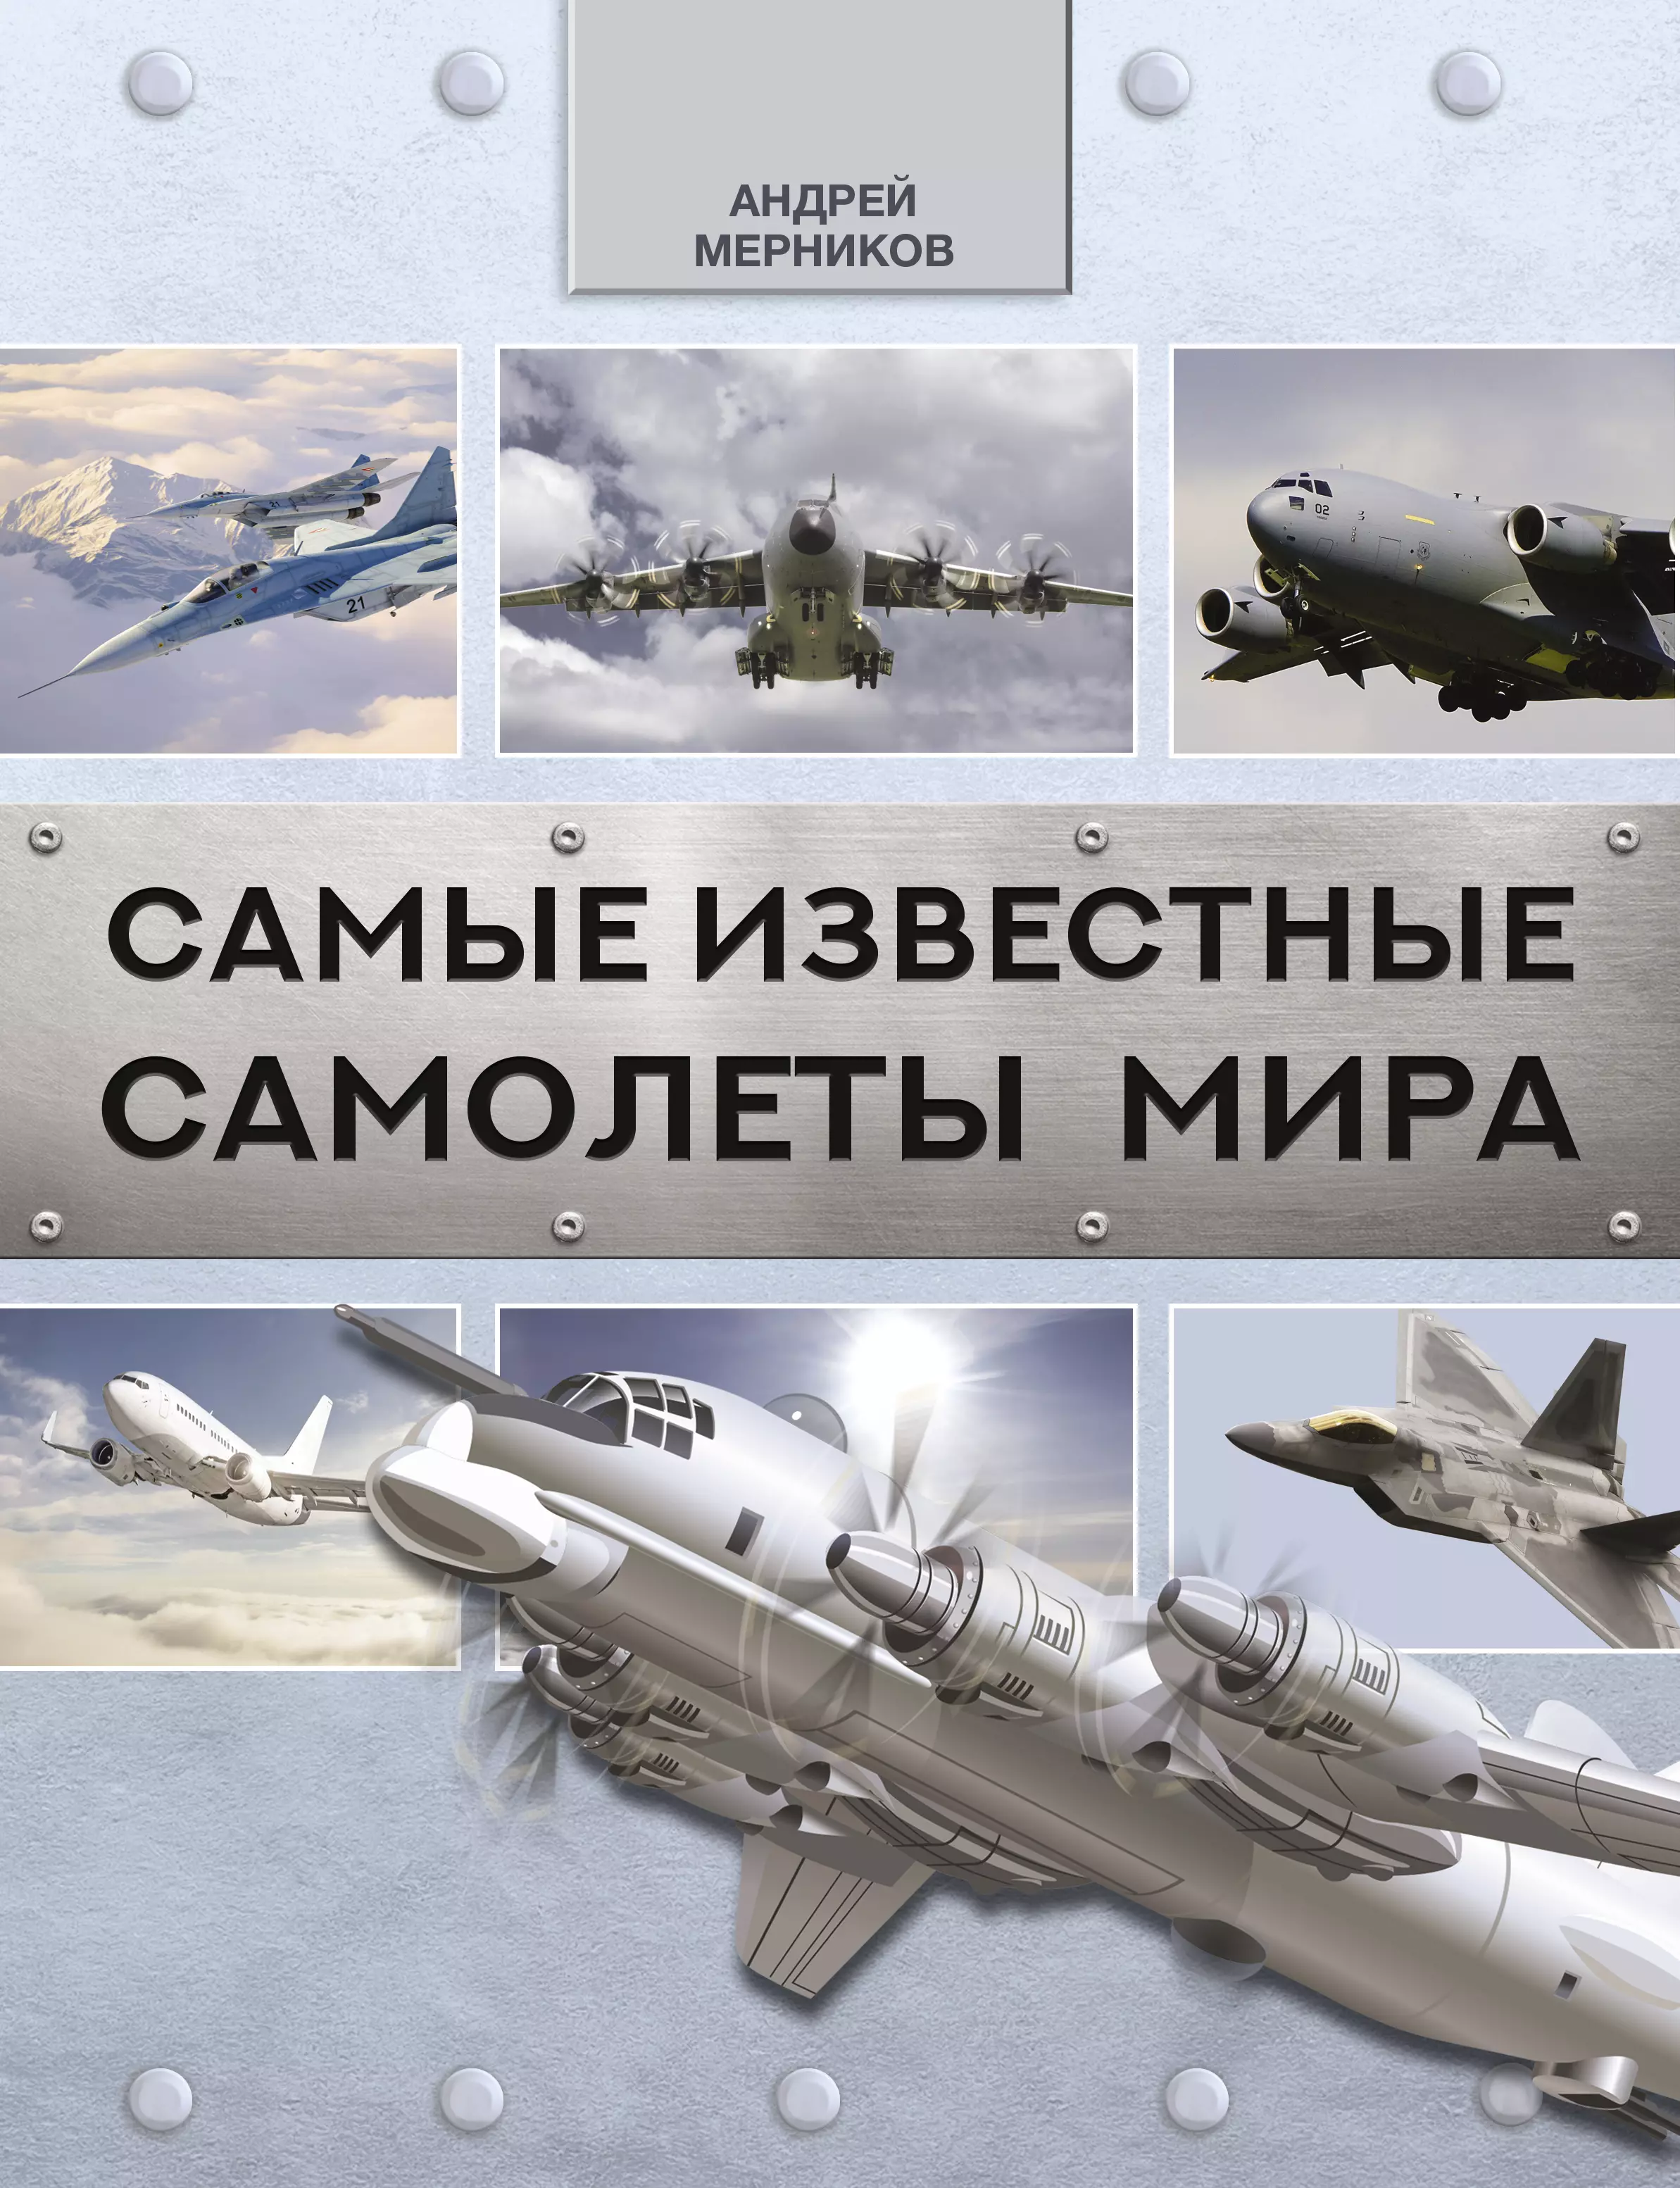 Мерников Андрей Геннадьевич - Самые известные самолеты мира